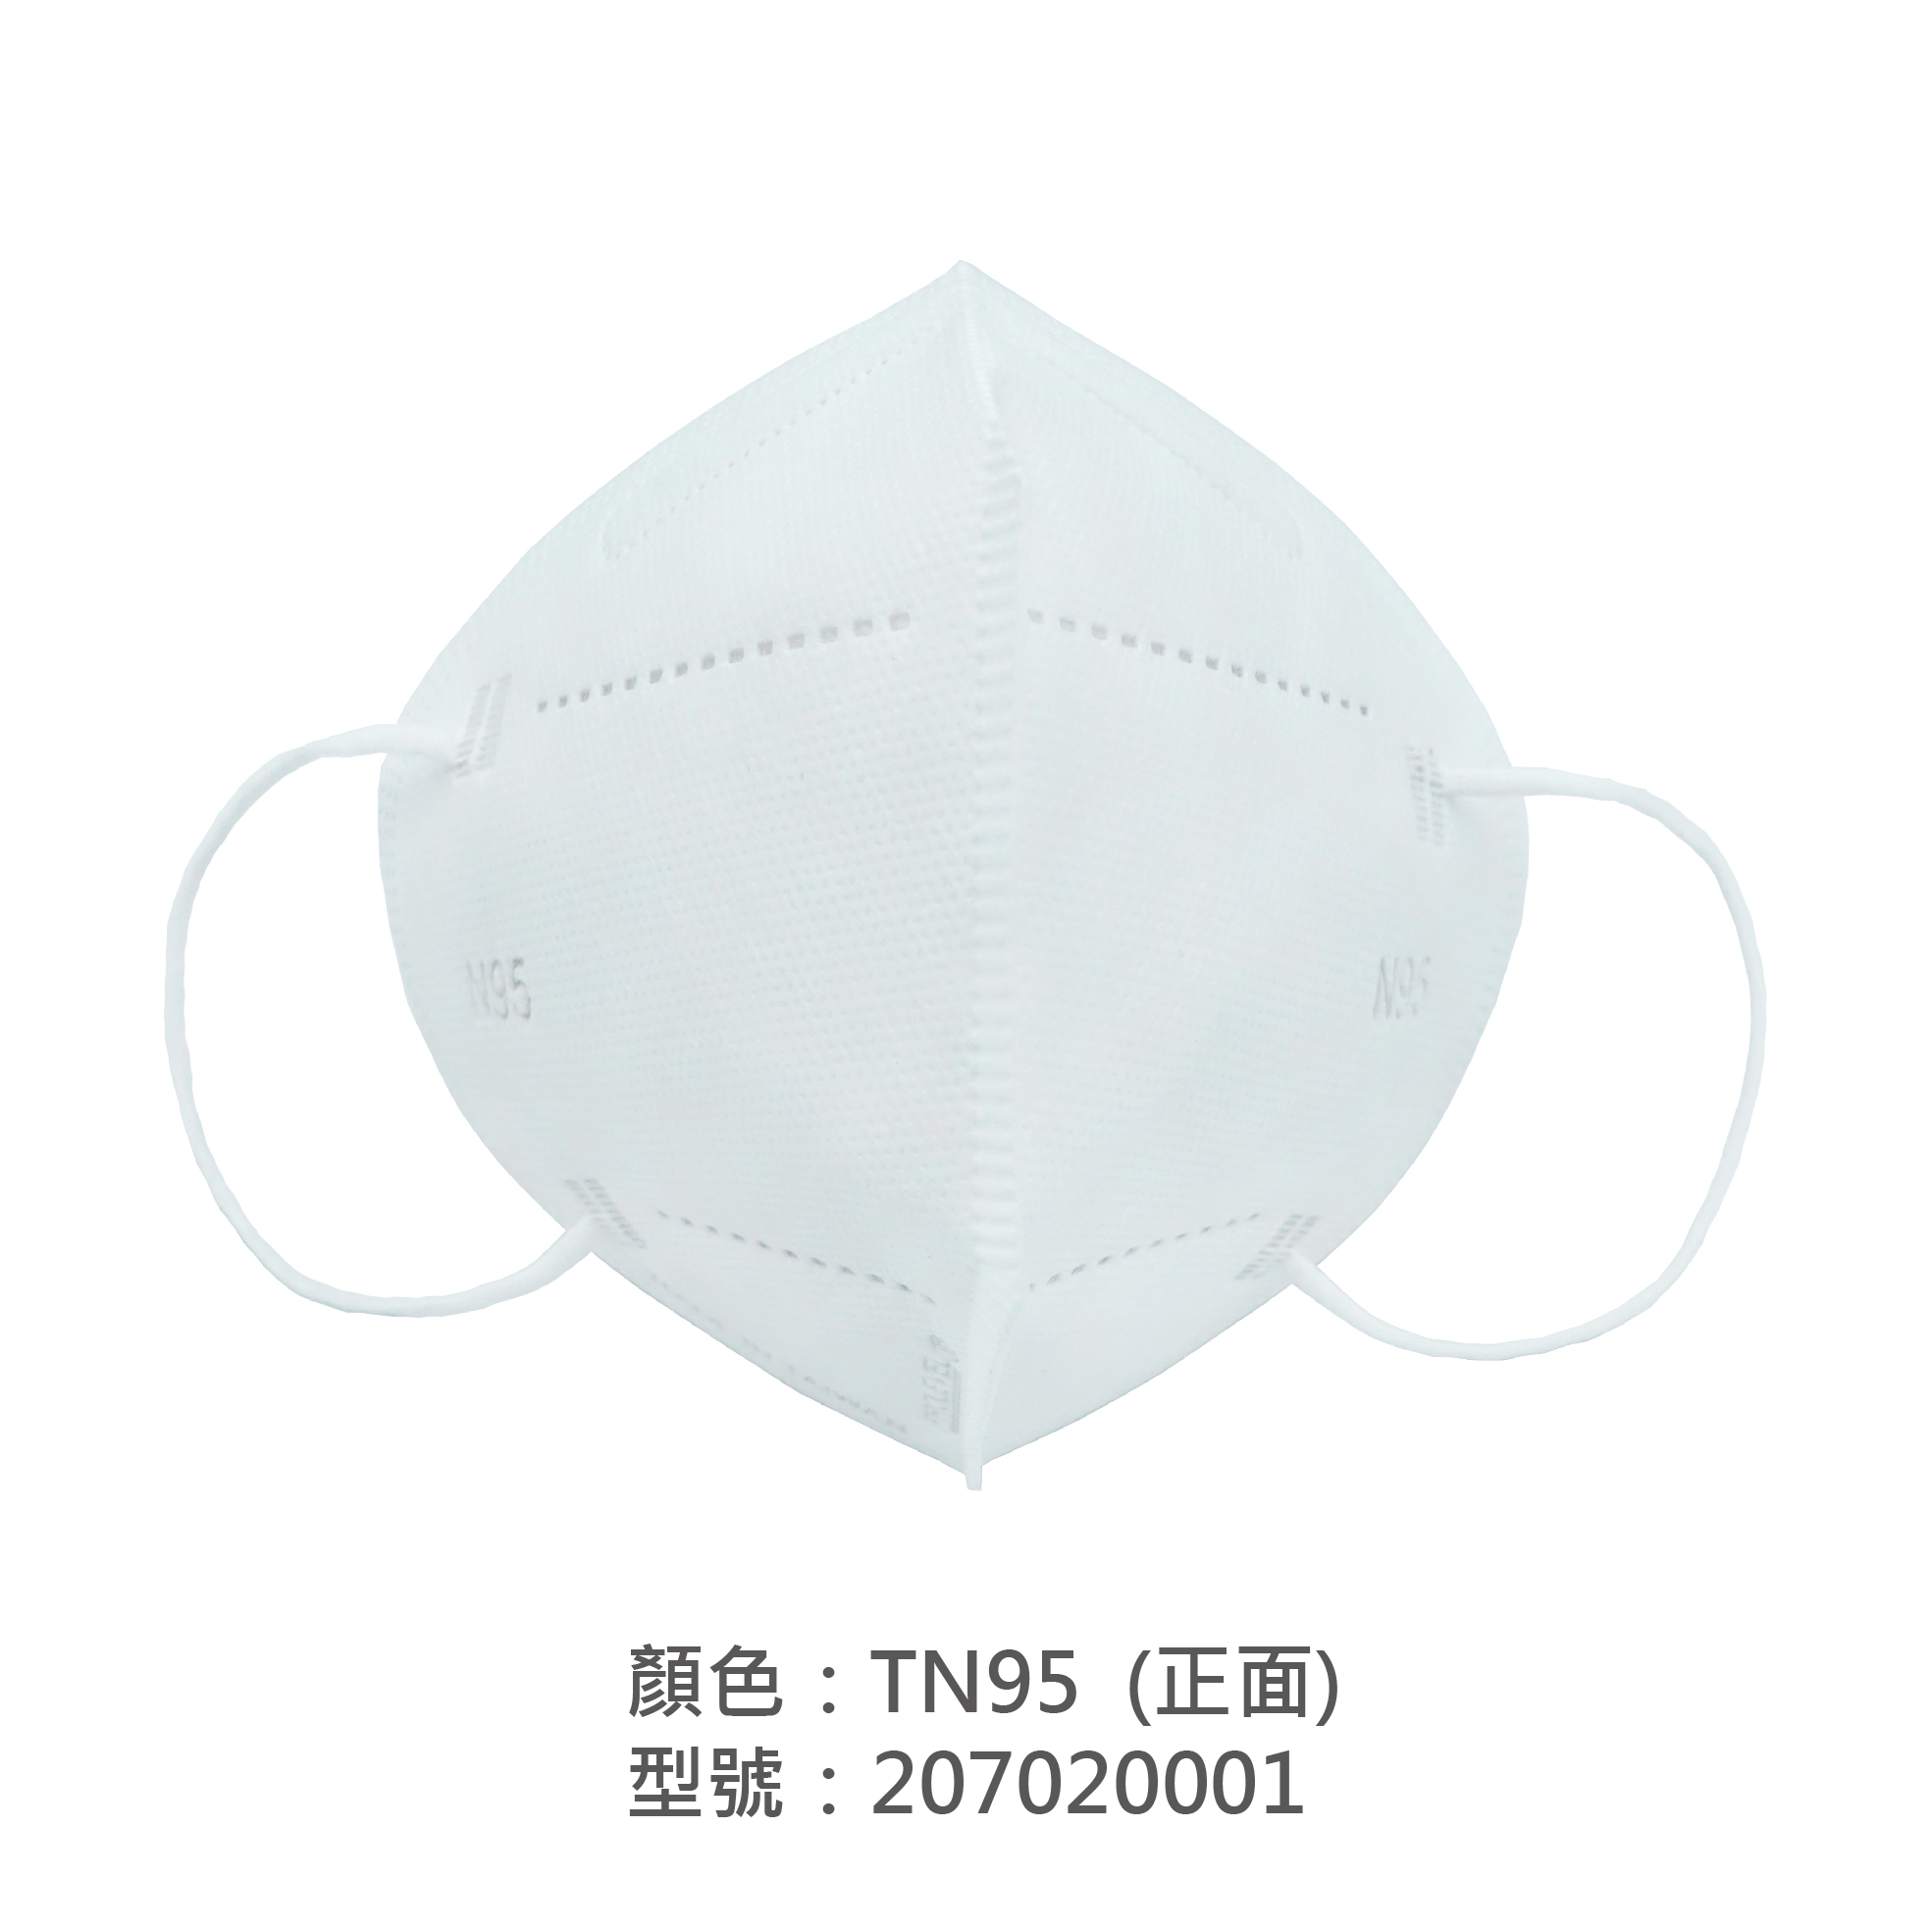 TN95口罩(專業防護口罩) 207020001|TN95口罩/TN95防護口罩系列